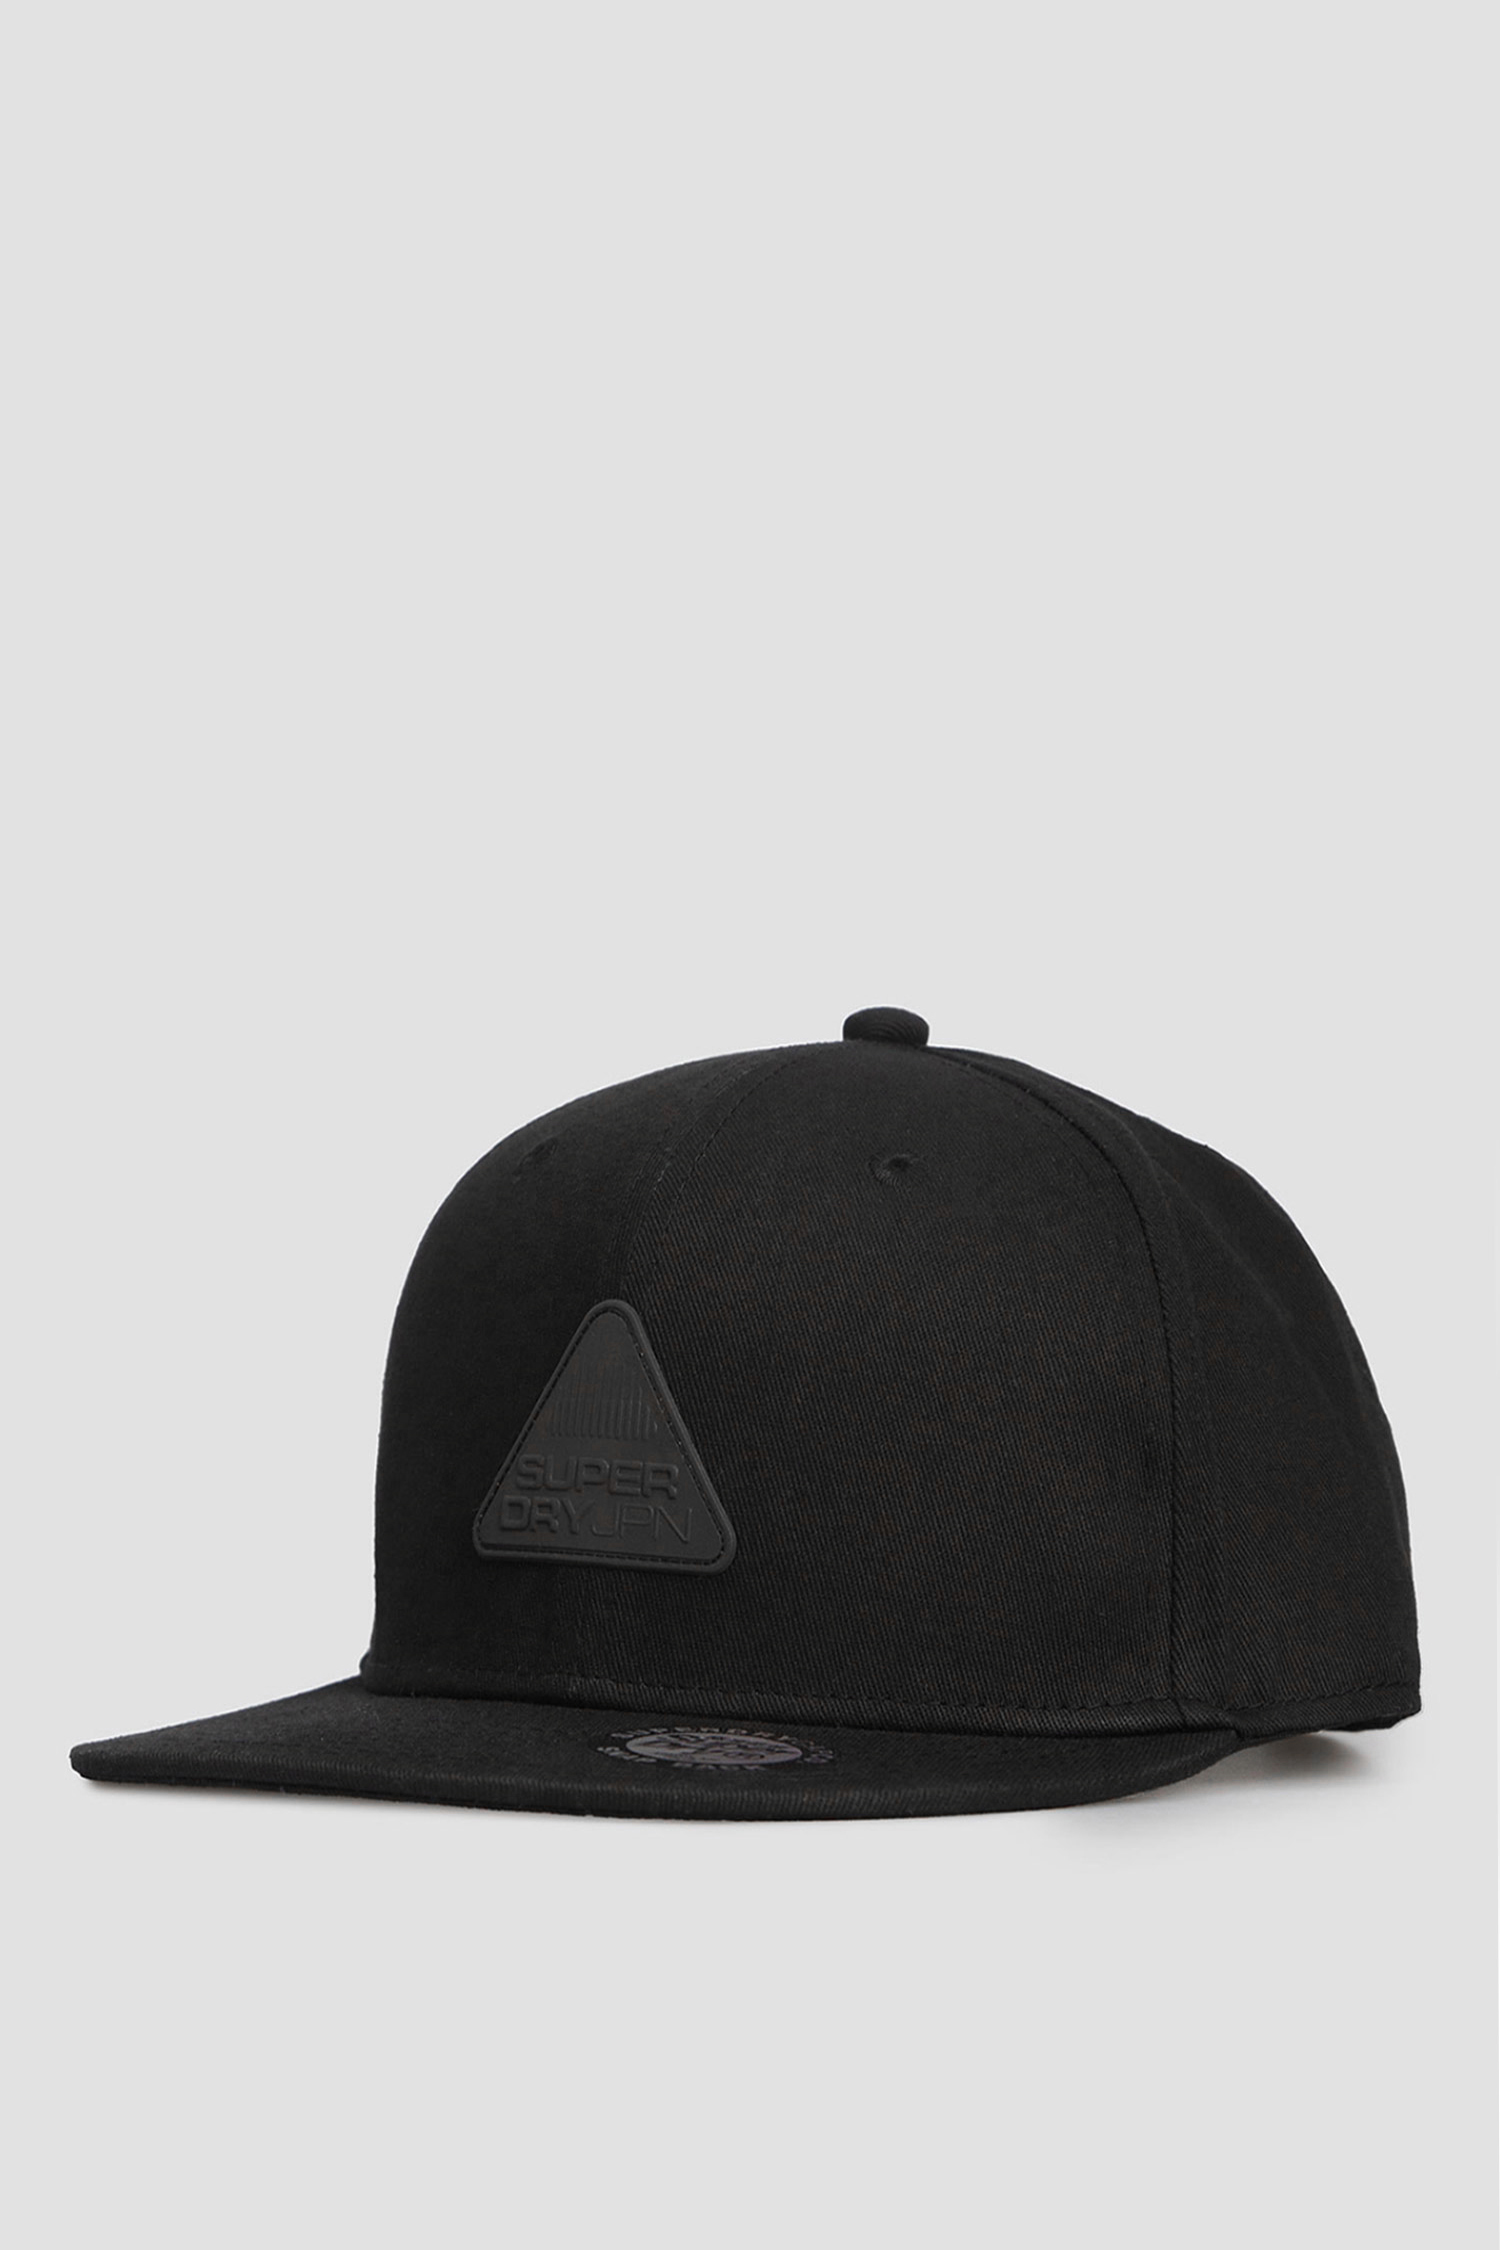 Черная кепка для парней SuperDry M9010011A;02A